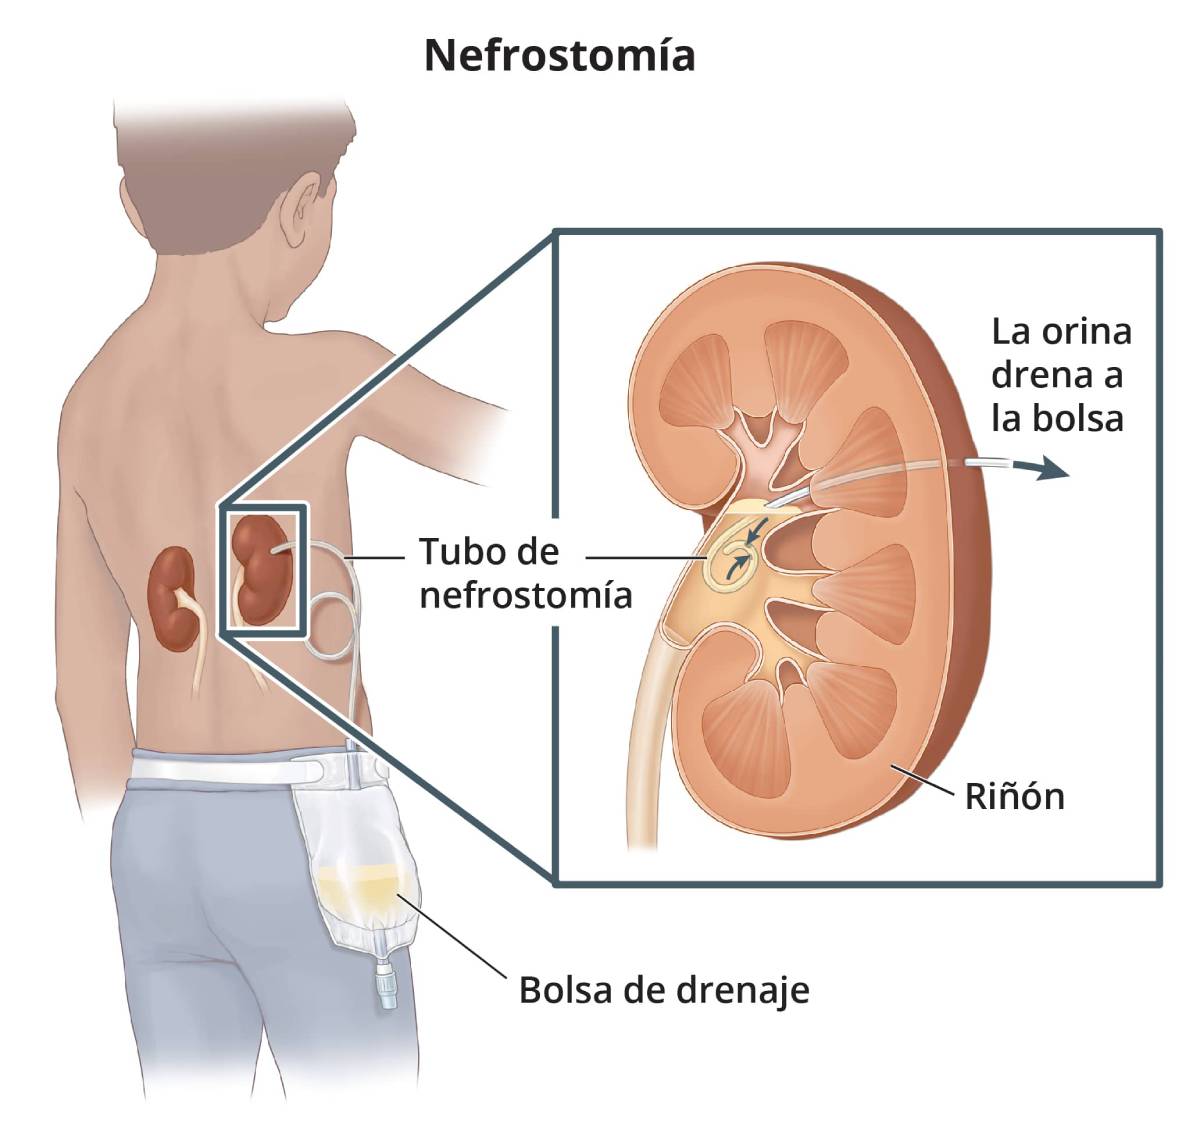 Un tubo de nefrostom铆a insertado en el ri帽贸n a trav茅s de la espalda del paciente y conectado a una bolsa de drenaje externa.